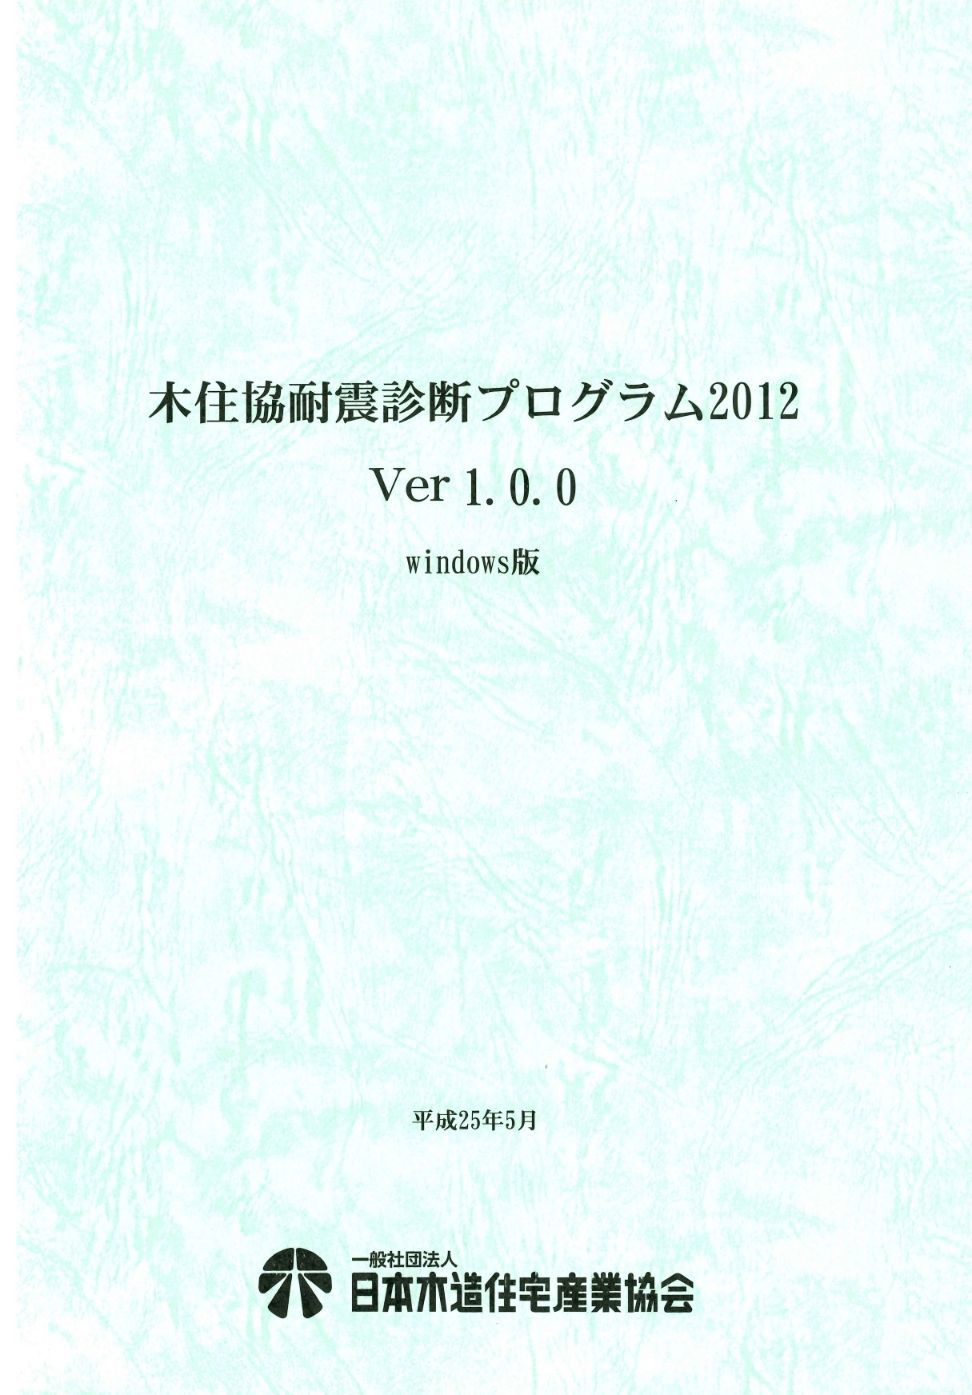 「木住協耐震診断プログラム 2012 Ver1.3」